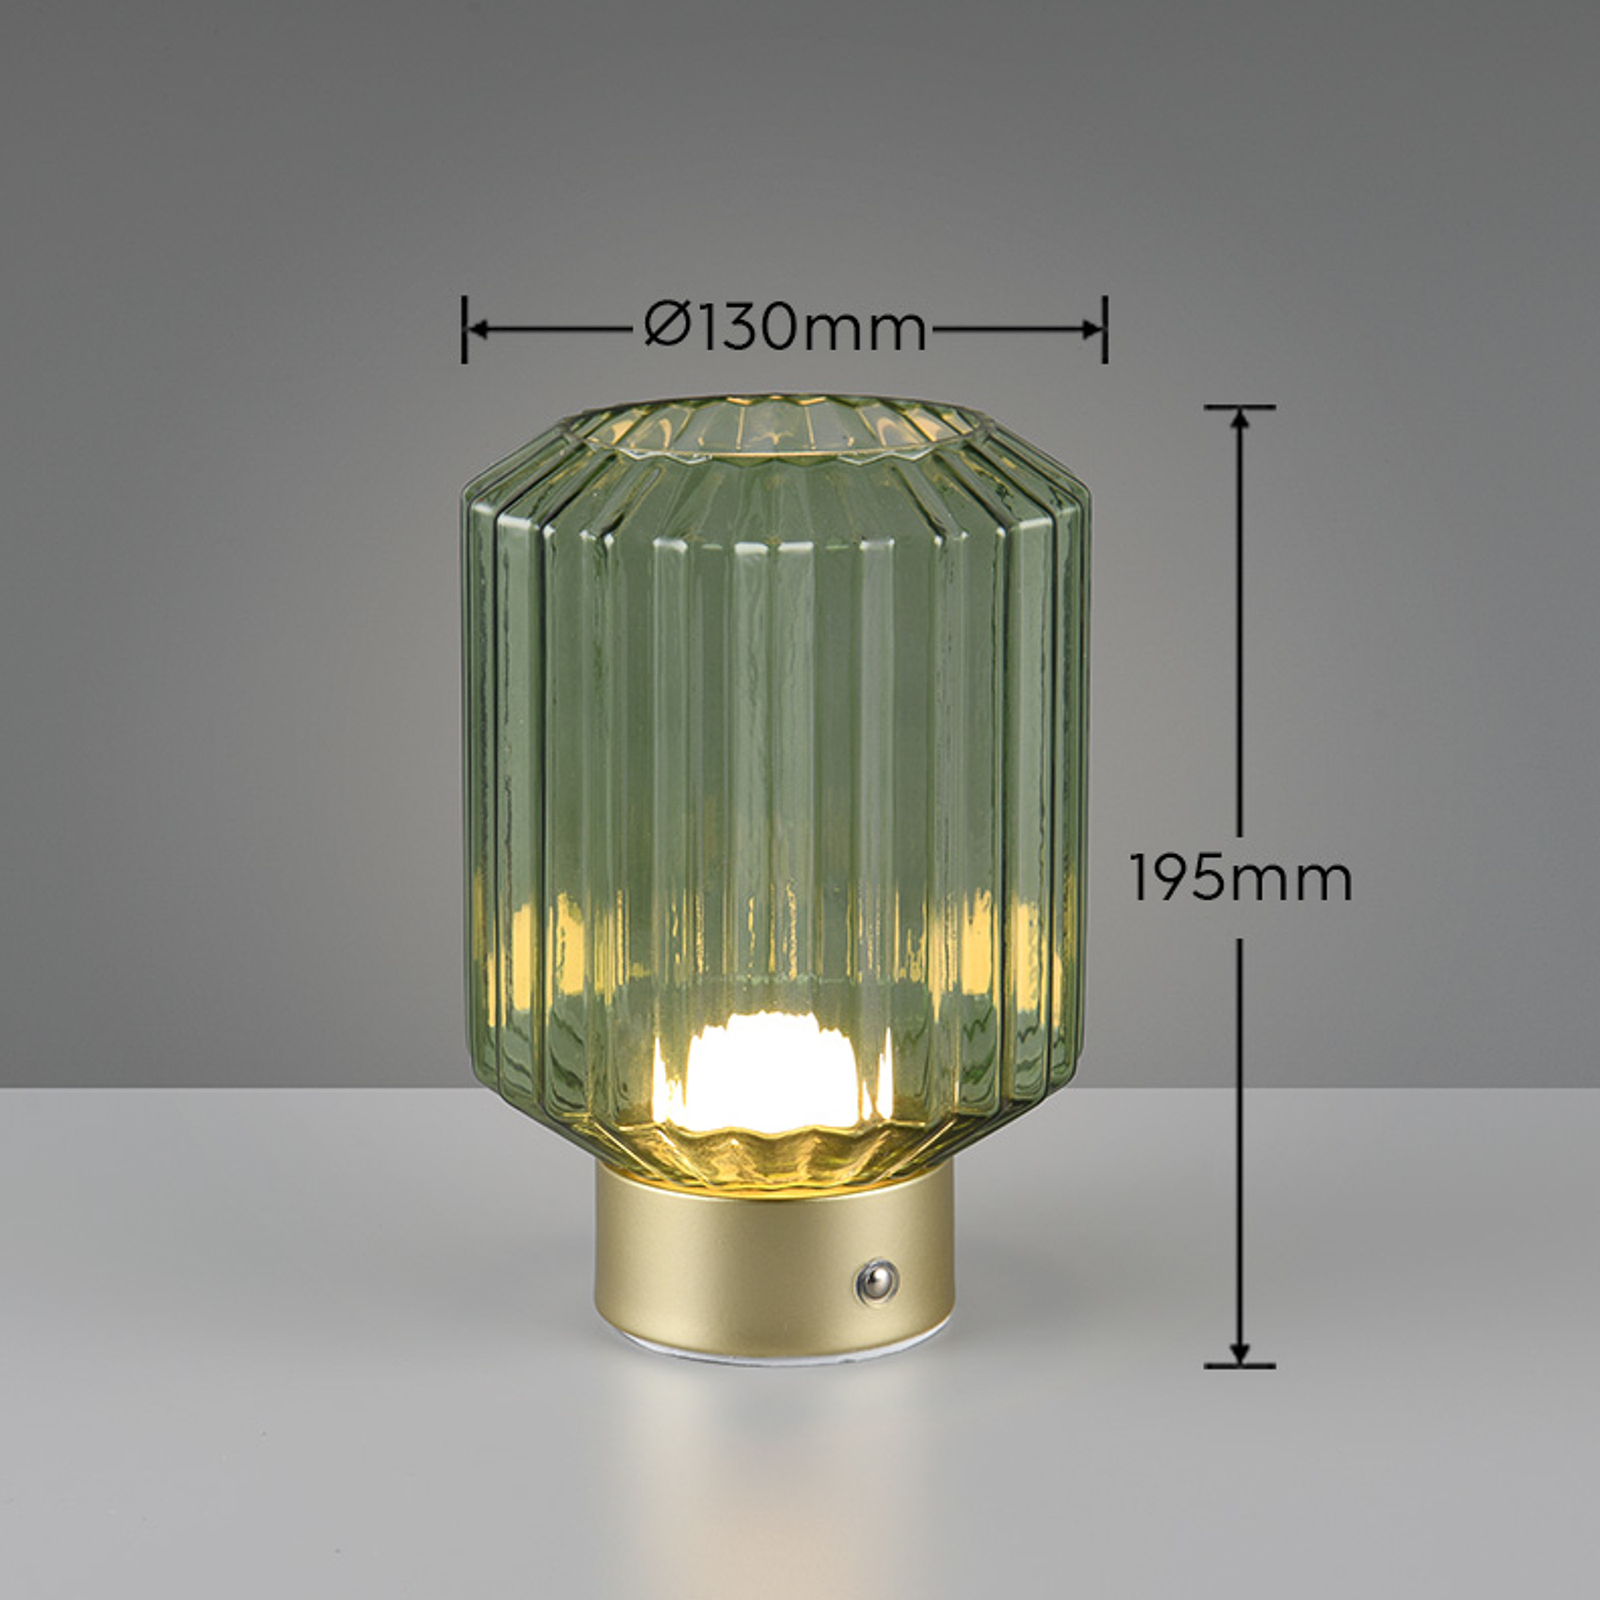 Lord LED genopladelig bordlampe, messing/grøn, højde 19,5 cm, glas